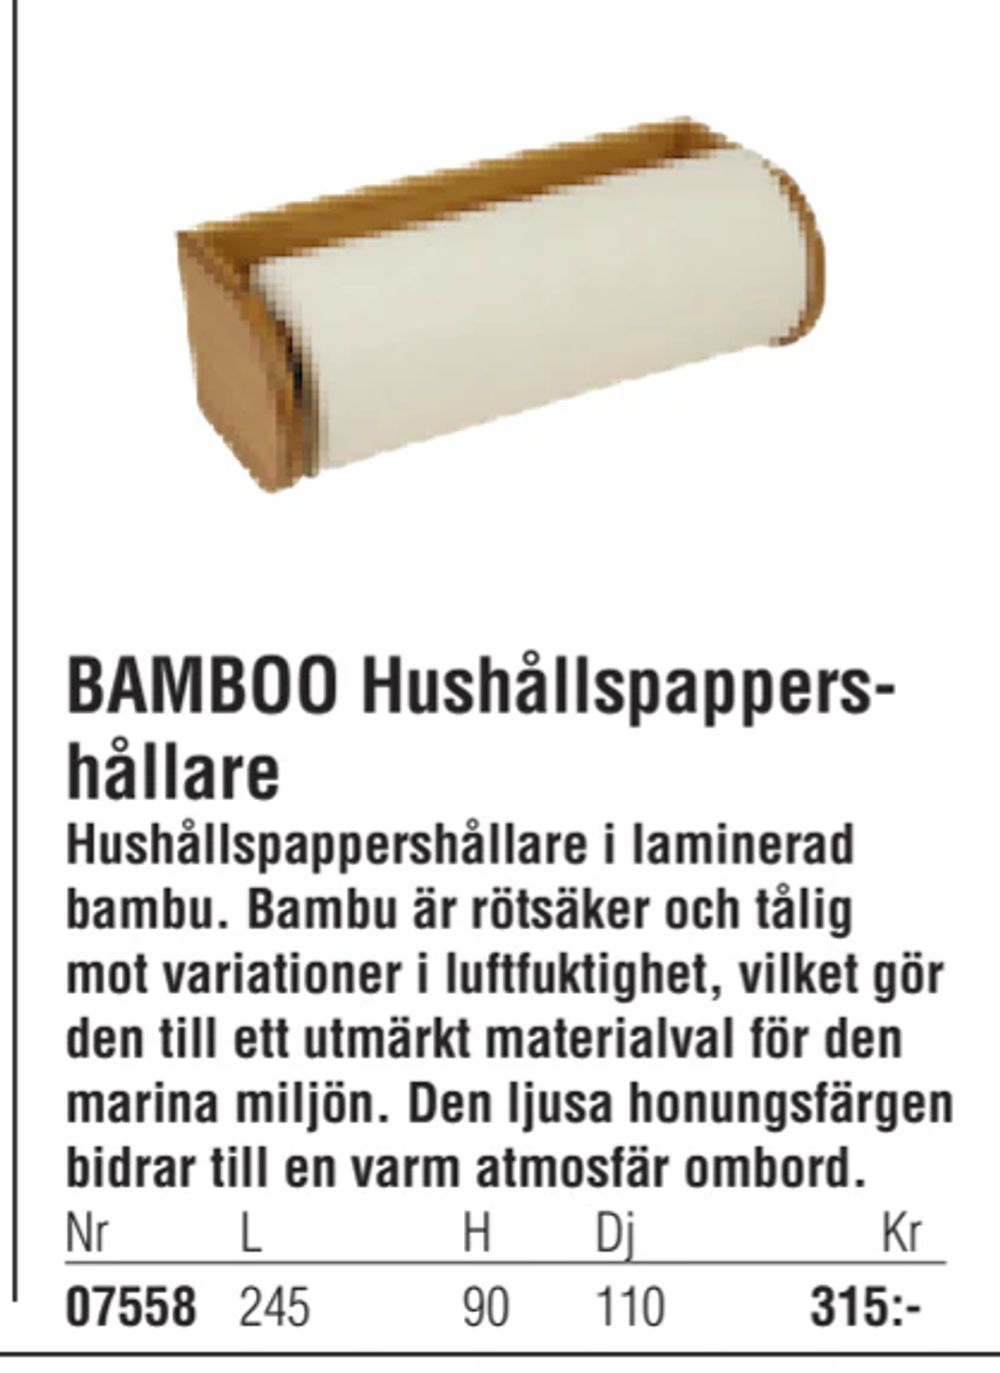 Erbjudanden på BAMBOO Hushållspappershållare från Erlandsons Brygga för 315 kr